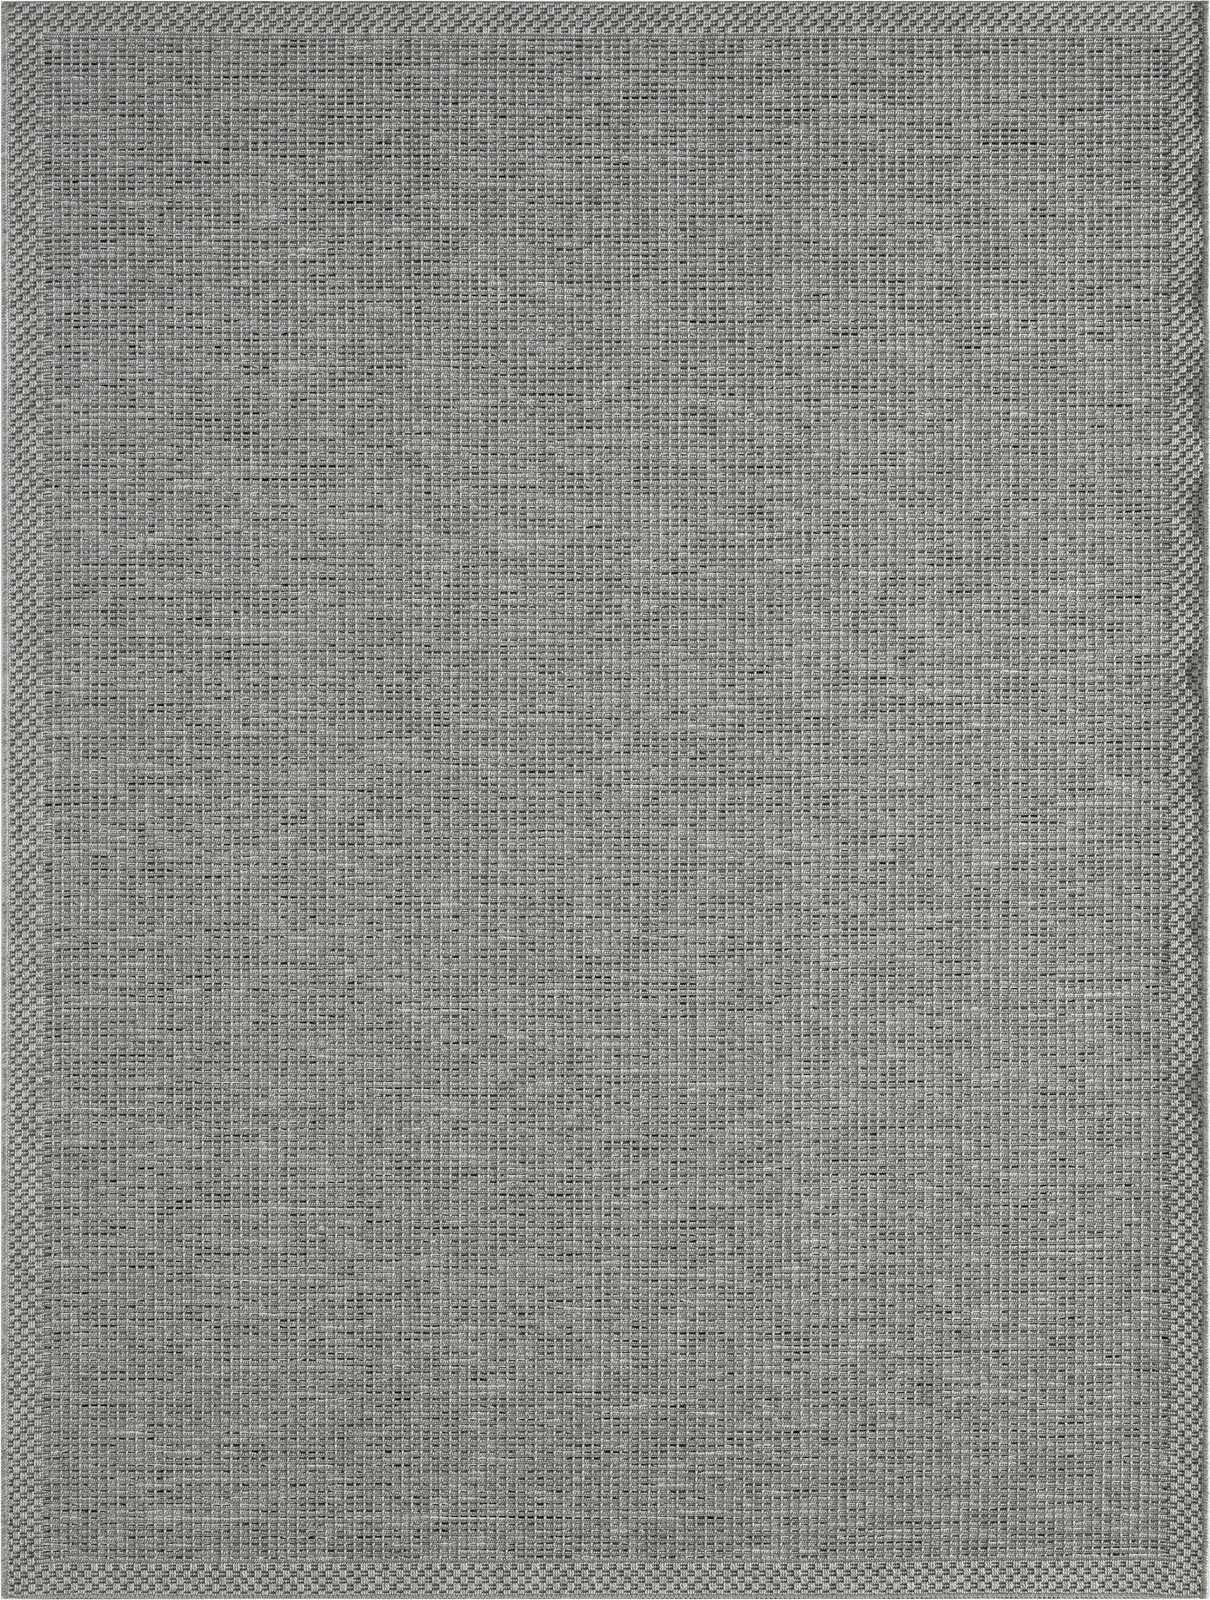             Plain Outdoor Rug in Grey - 220 x 160 cm
        